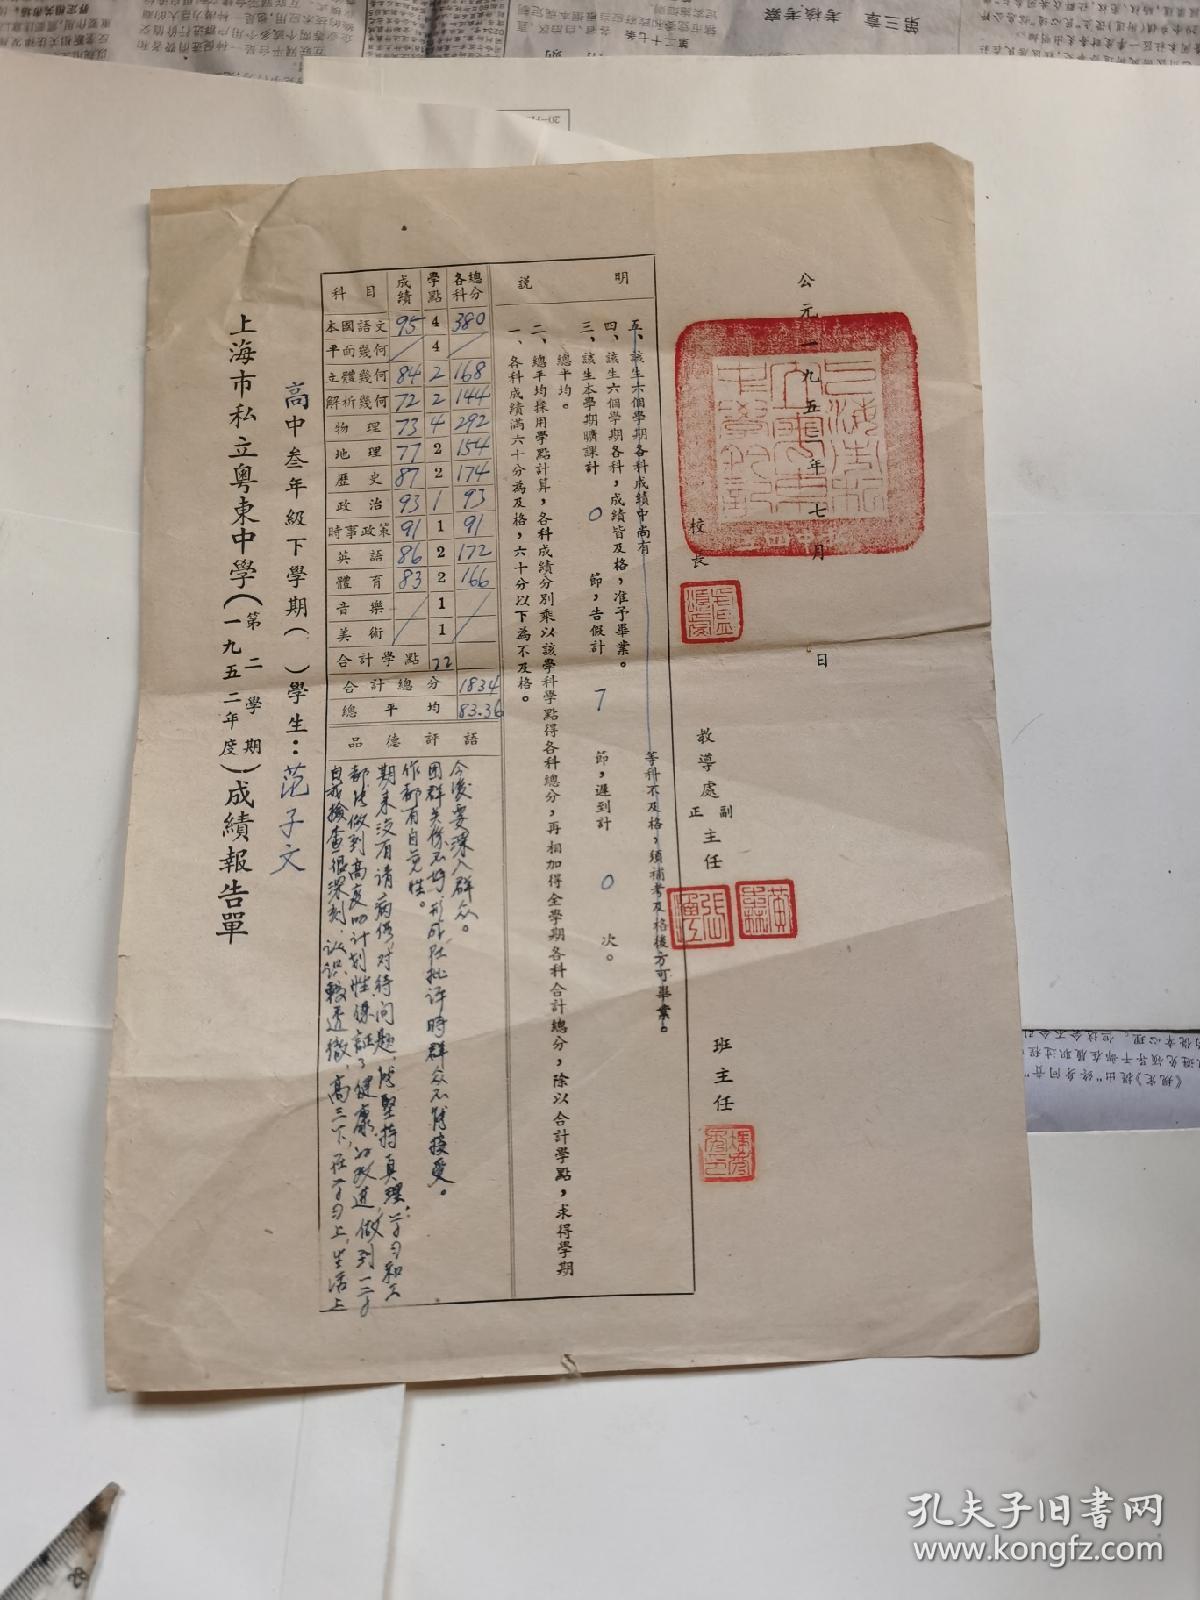 1952年上海私立粤东中学高三成绩报告单（校长卢颂虔、教导主任盖章）